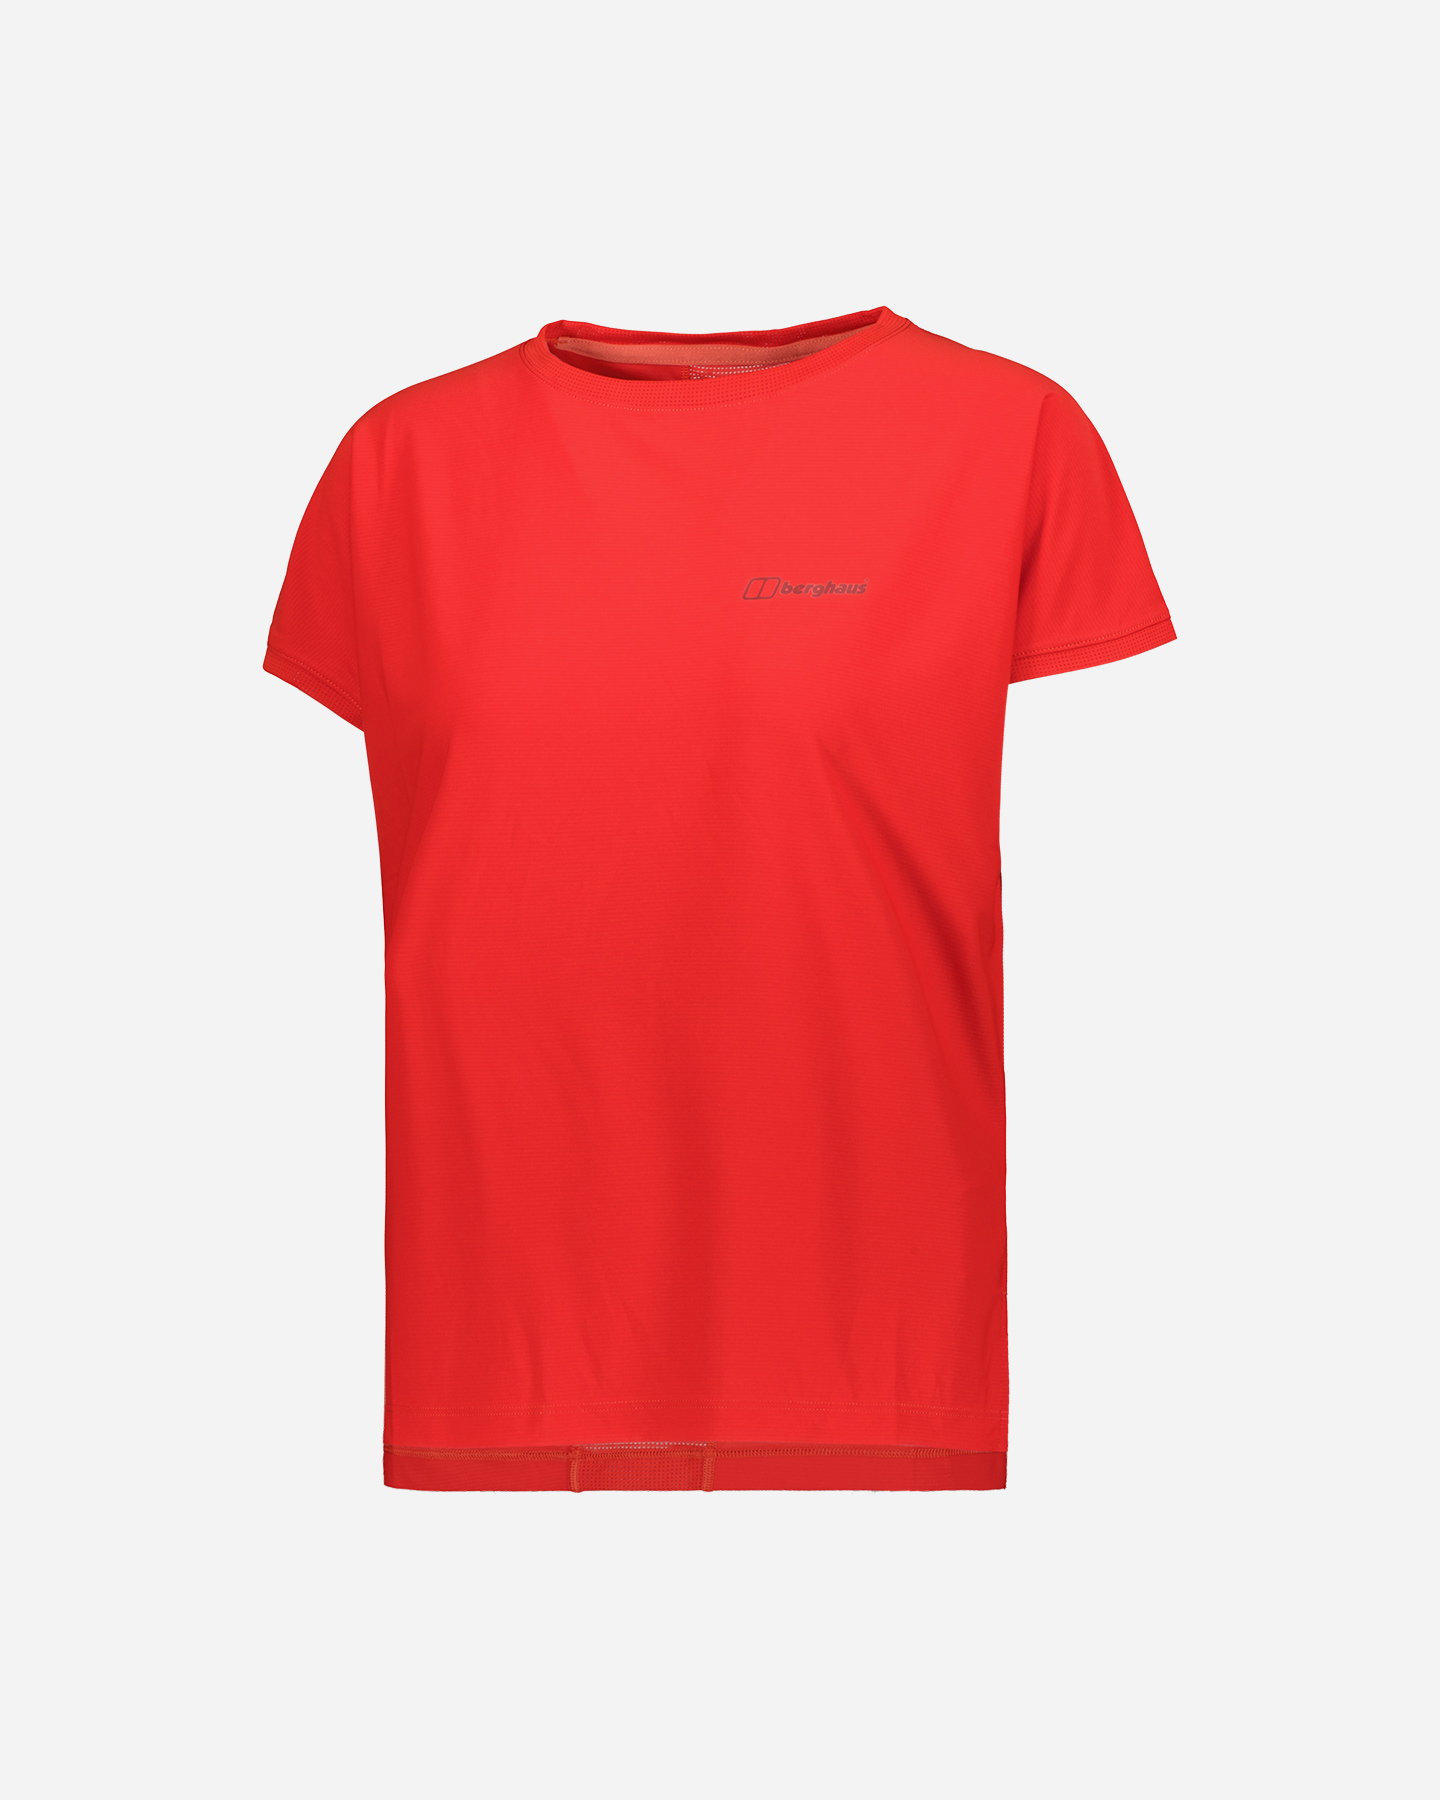 berghaus - nesna w - t-shirt - donna